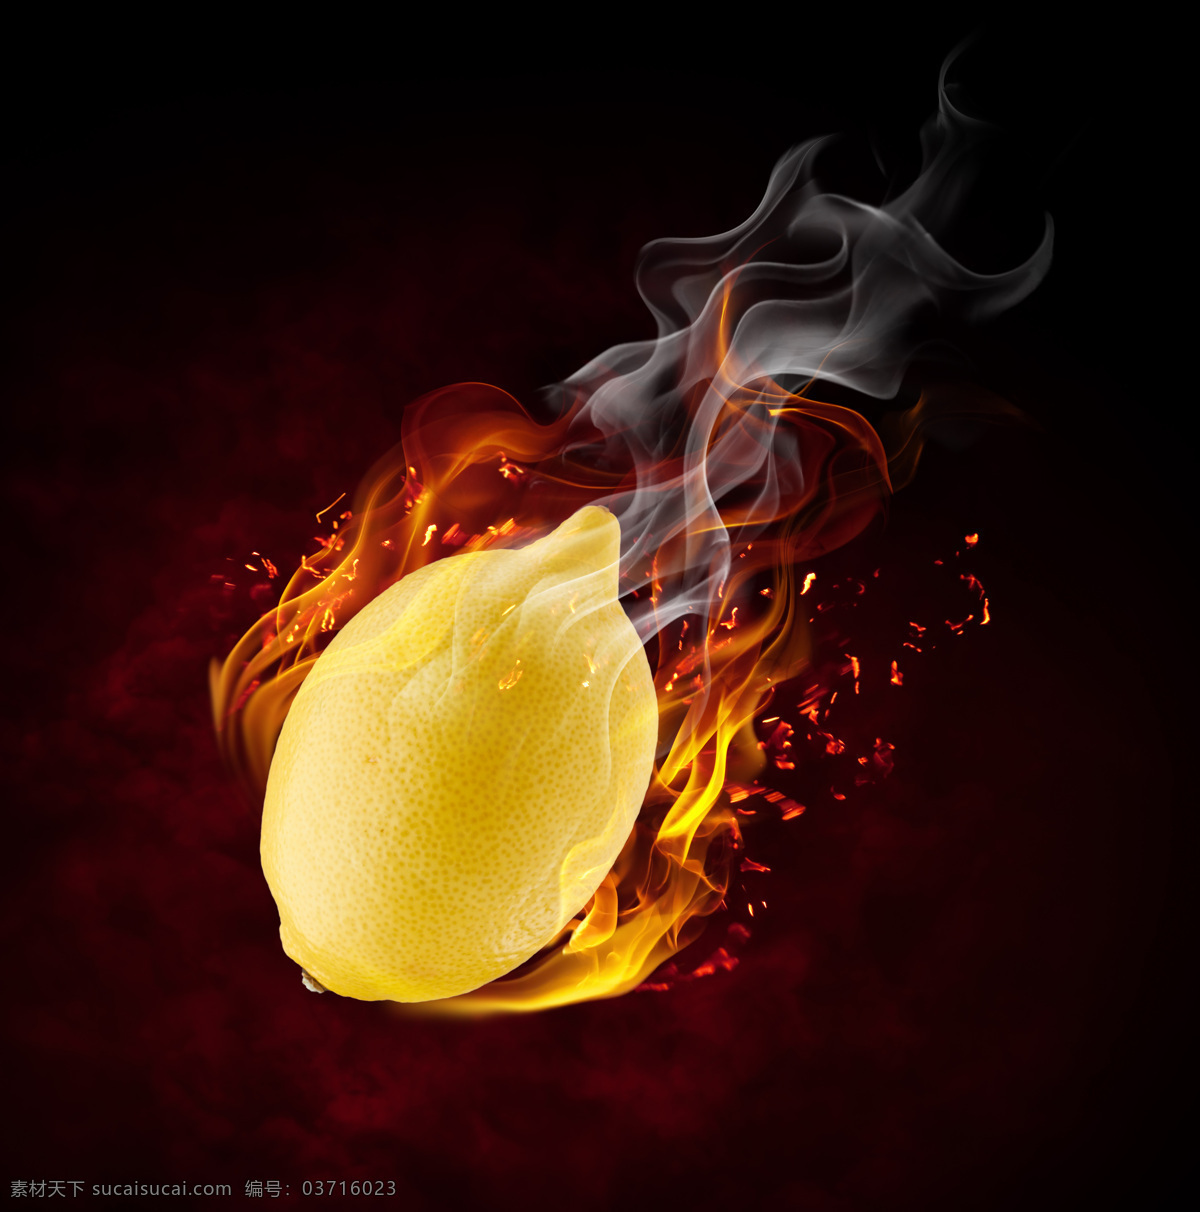 火焰 柠檬 水果 火势 火苗 火星 火焰图片 生活百科